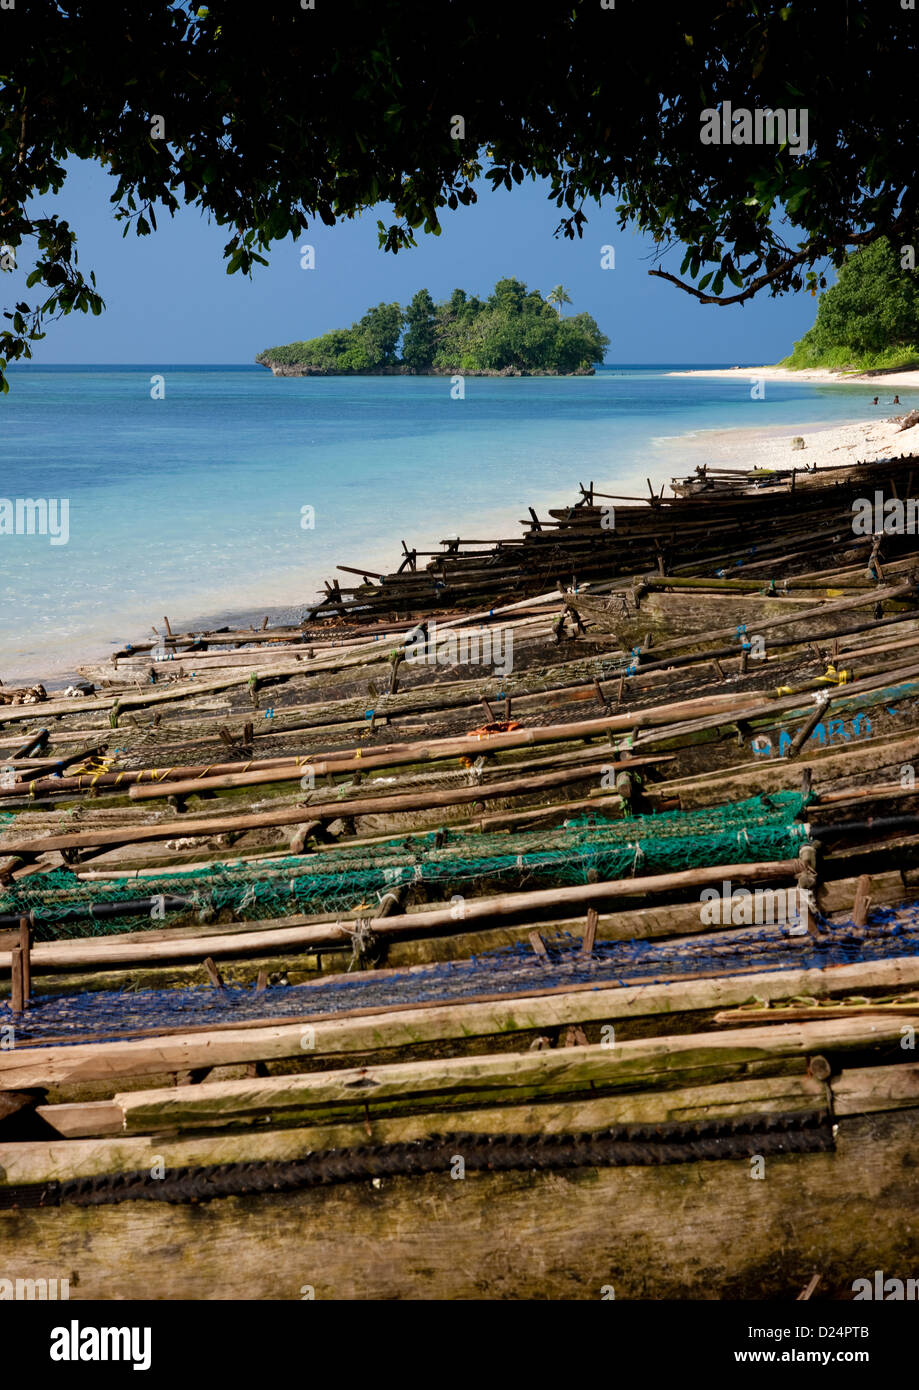 Barche sul bellissimo Kaibola deserta spiaggia nelle isole Trobriand, Papua Nuova Guinea Foto Stock